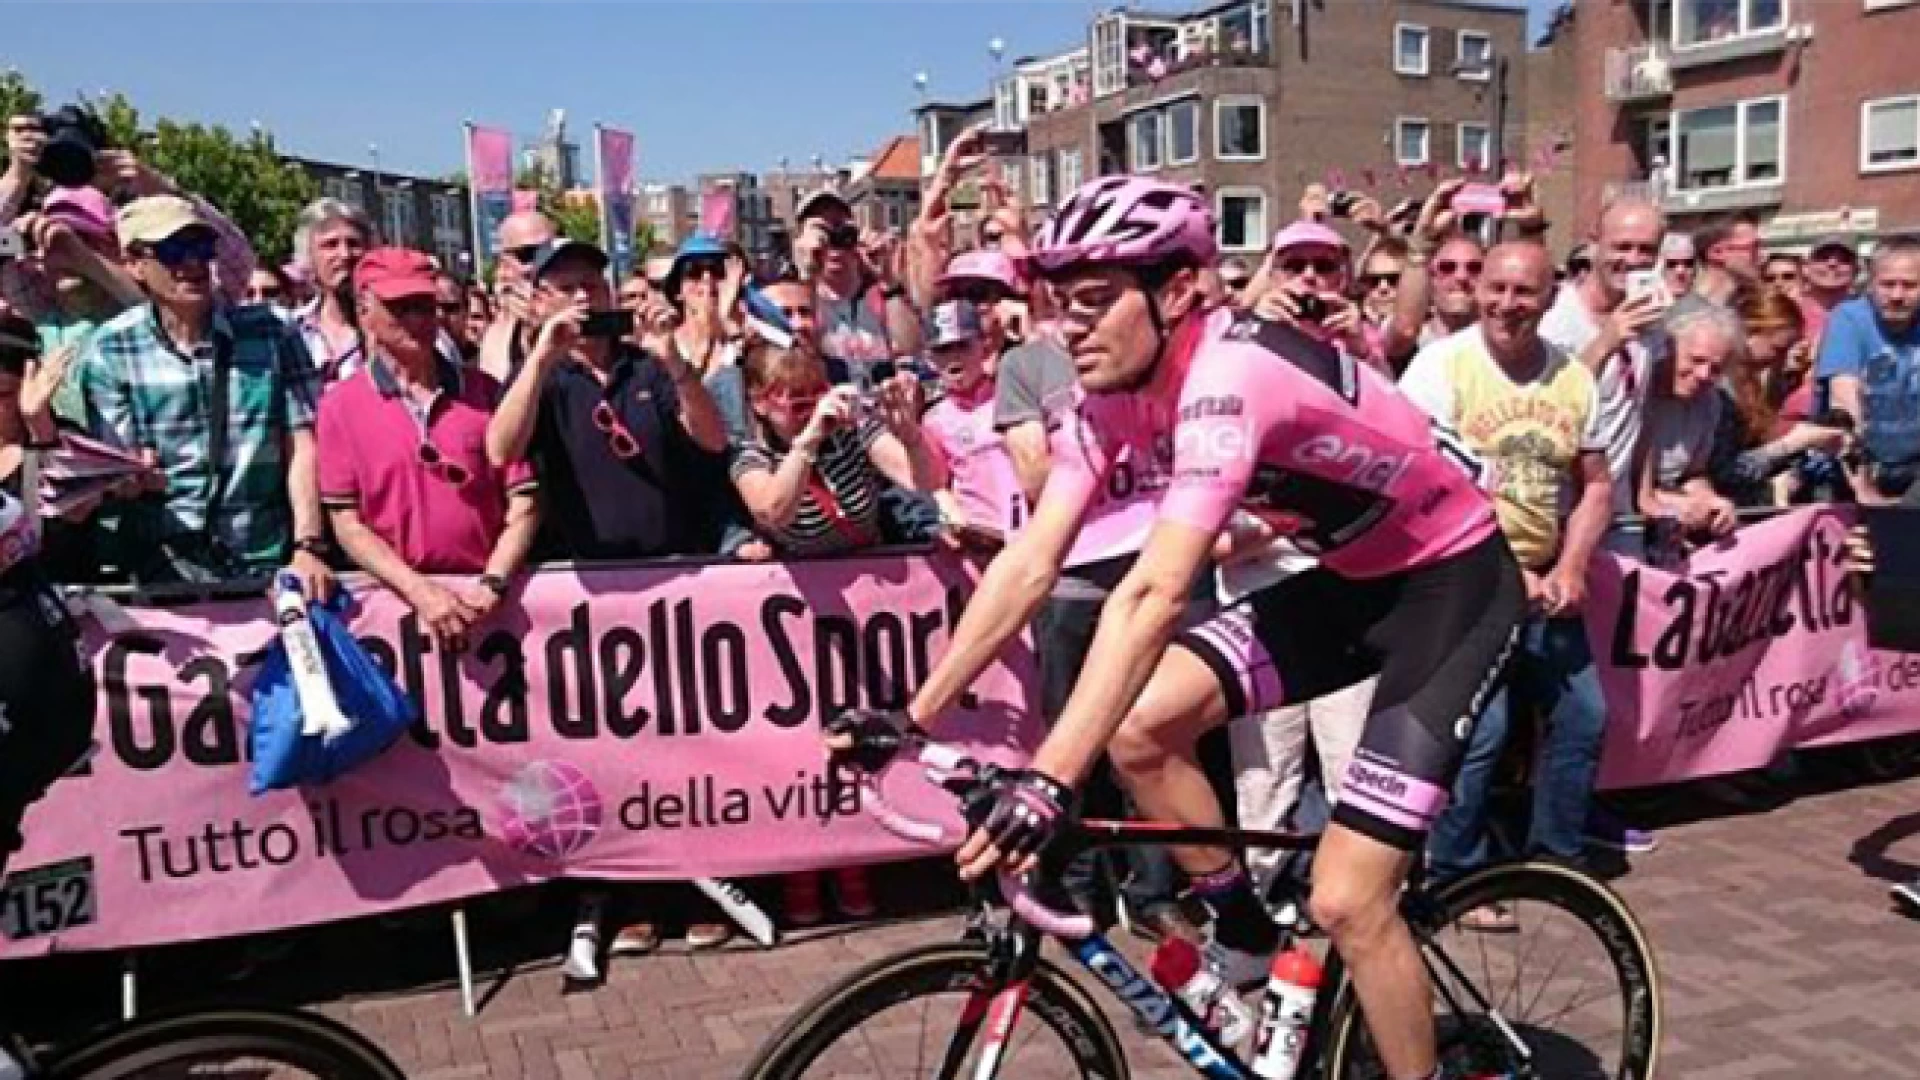 Giro d’Italia, domenica la Carovana si fermerà in piazza della Repubblica ad Isernia. Gadget e tante sorprese gratuite per tutti gli appassionati.